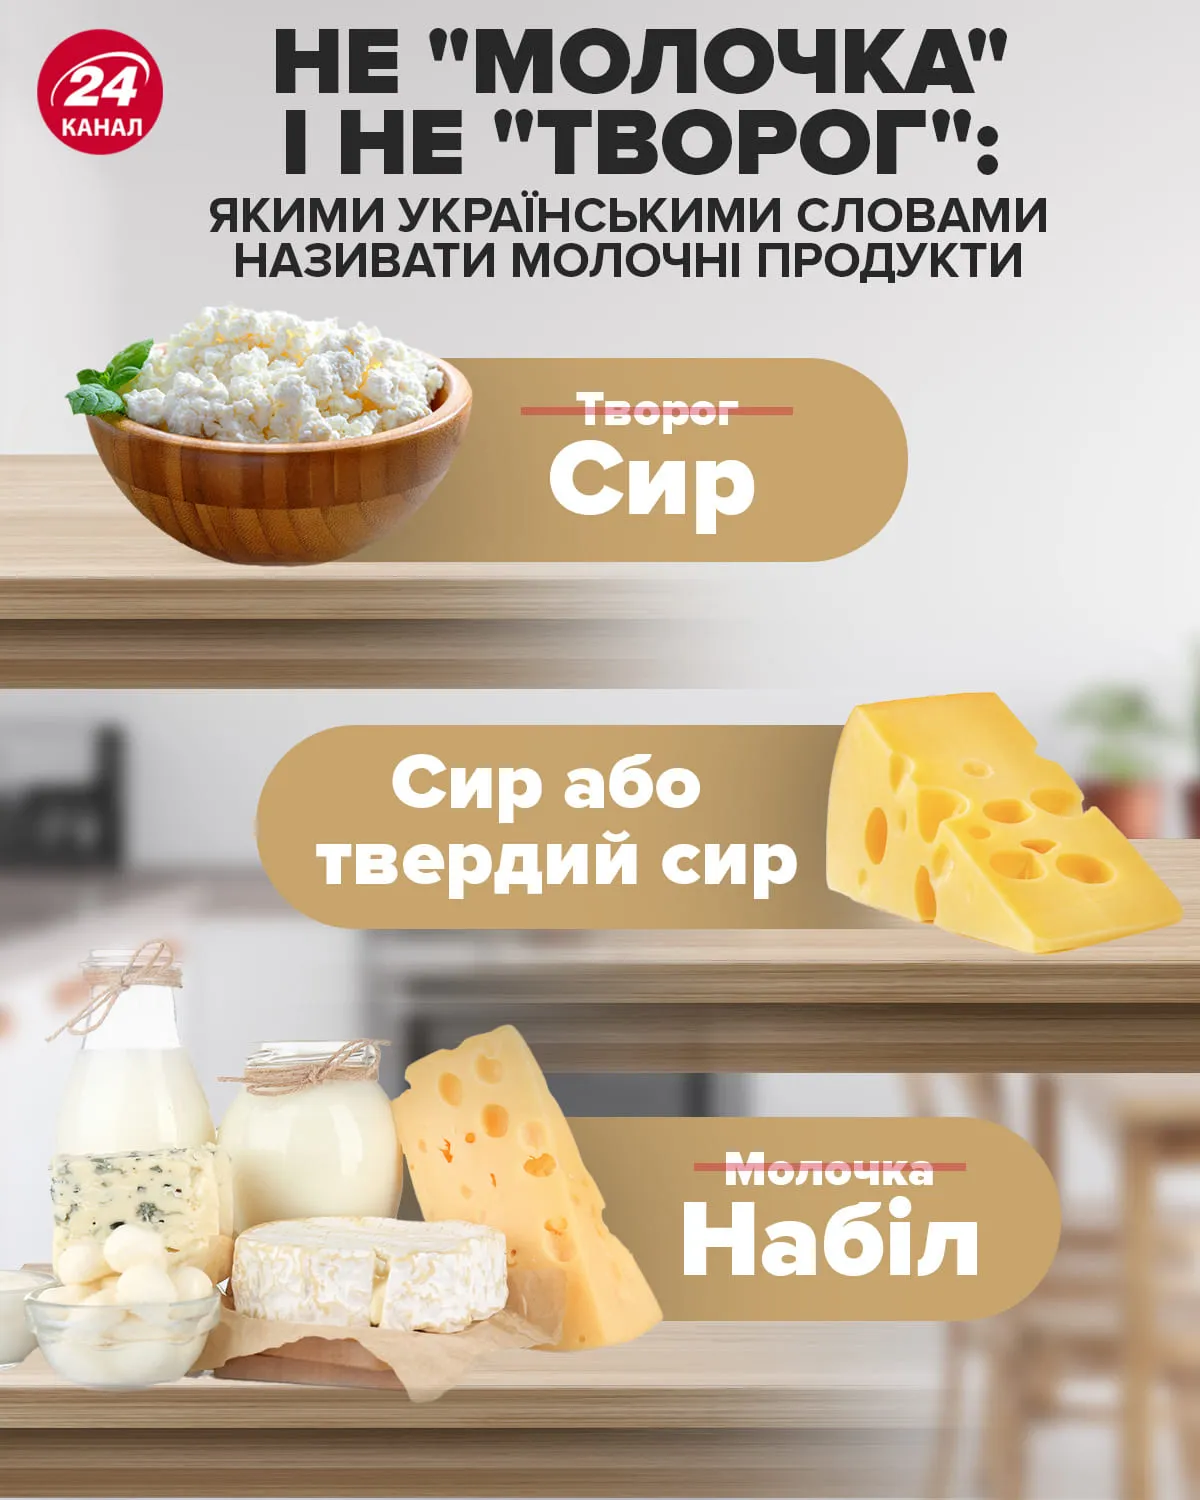 як українською називати молочні продукти